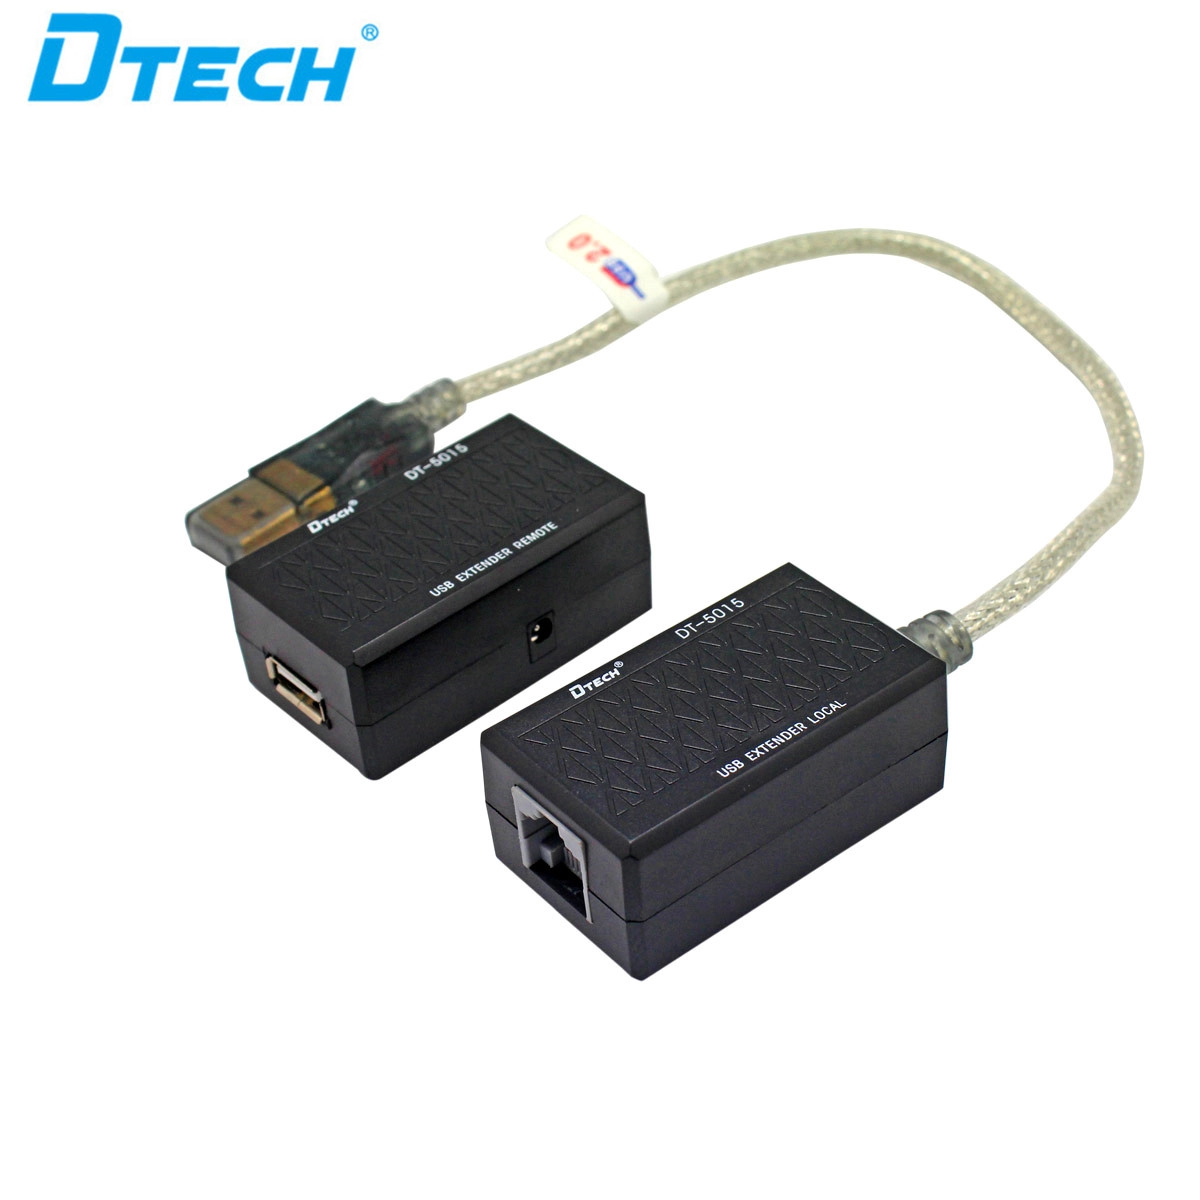 DTECH DT-5015 USB 60M Extender dengan kabel lan